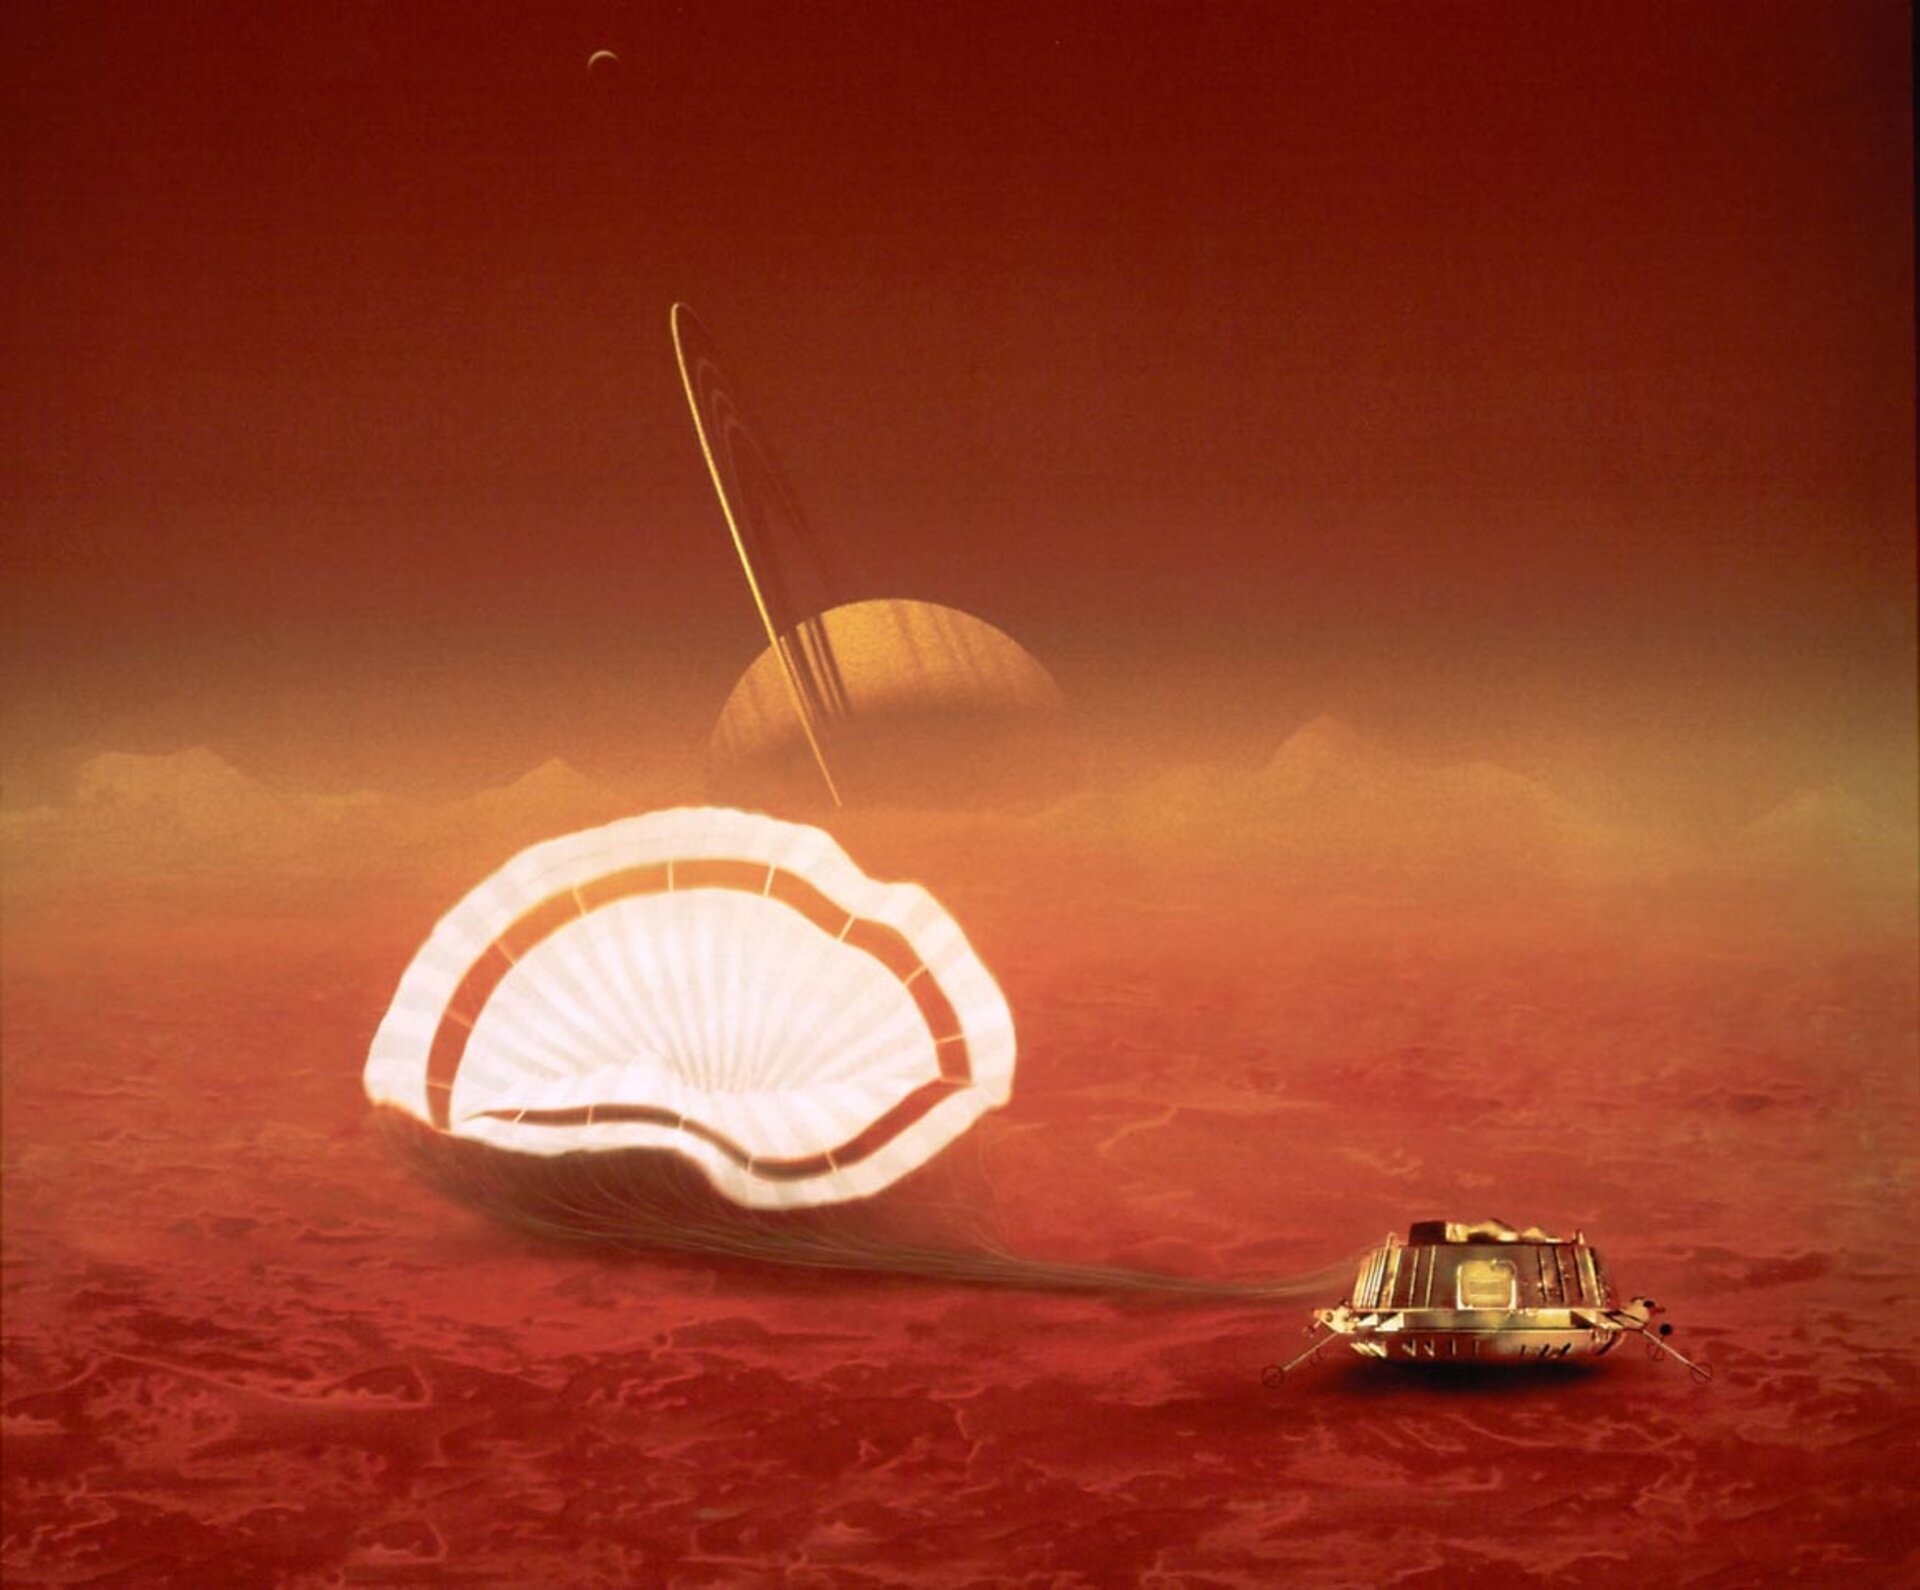 Impressione artistica della sonda Huygens su Titano